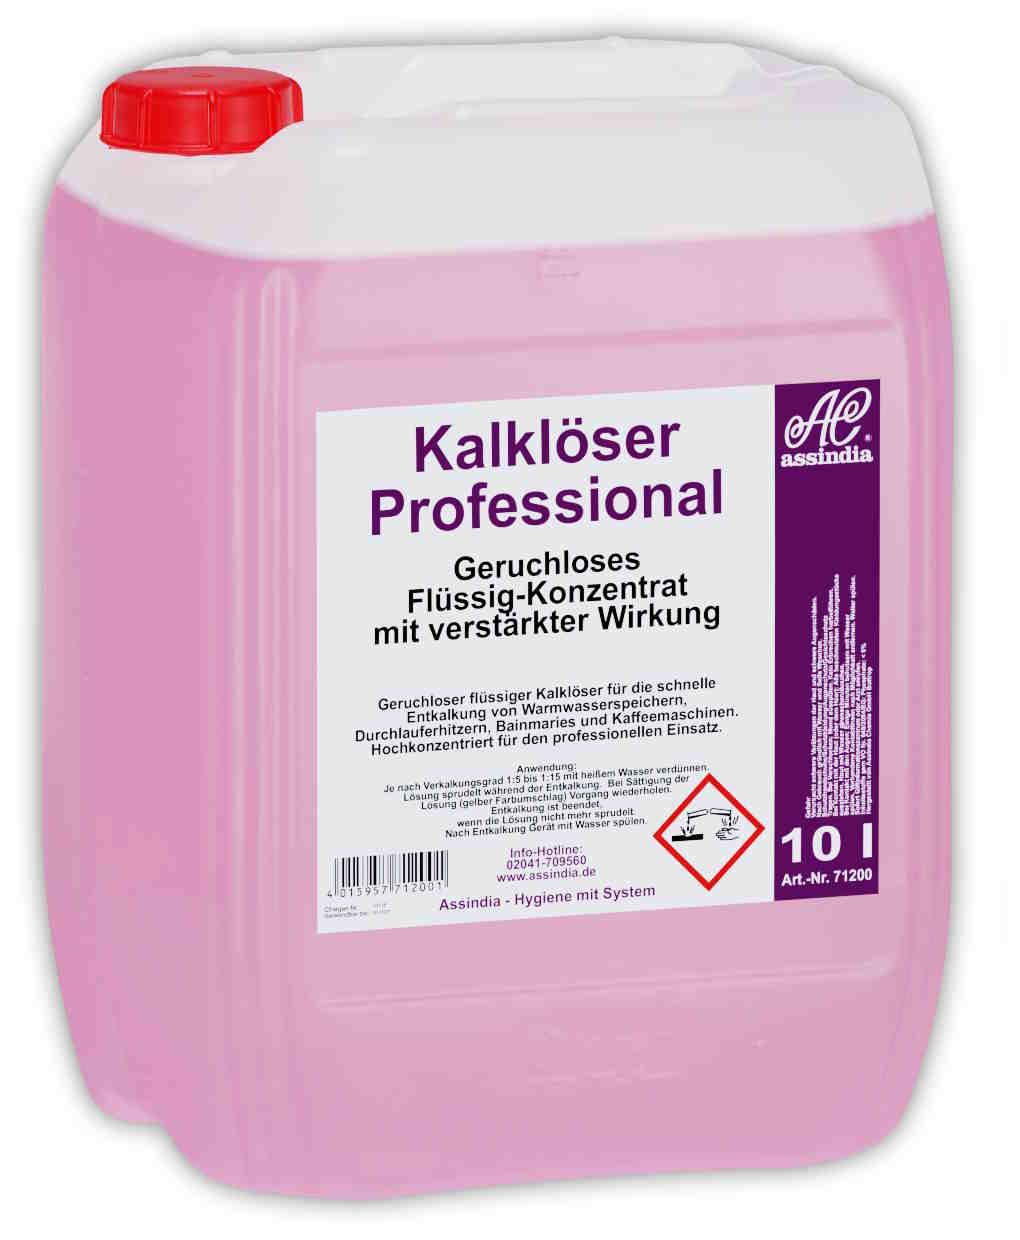 Kalklöser Professional hochkonzentriert für den professionellen Einsatz 10 Liter 